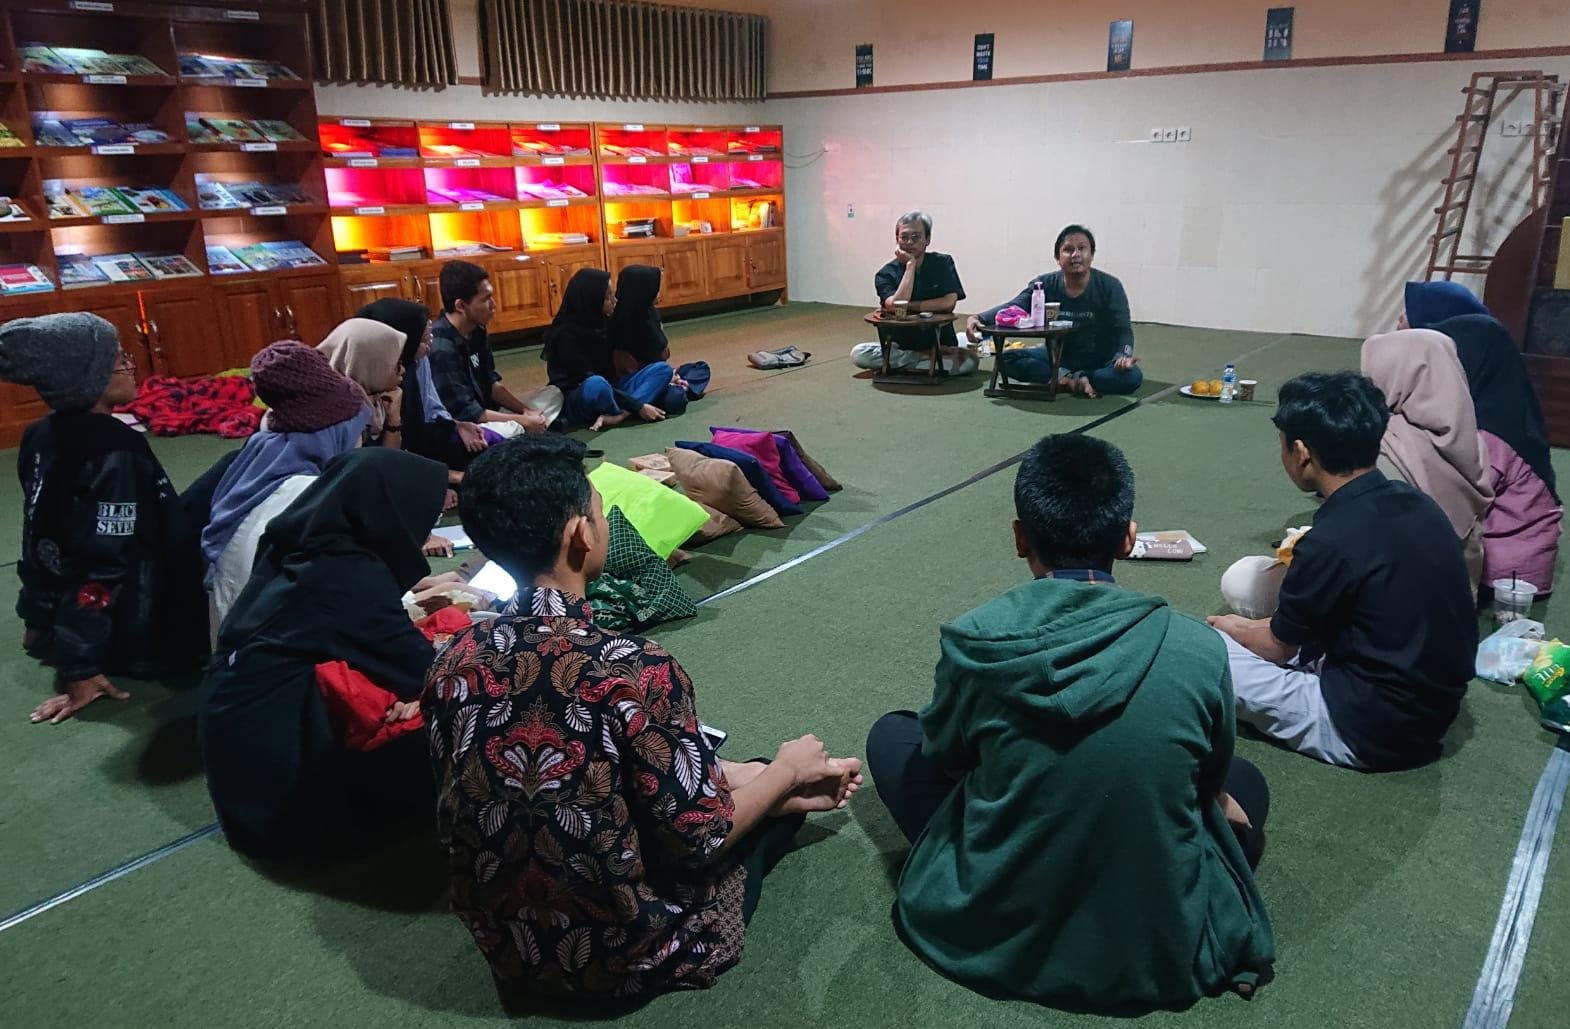 Latih Anggota Diskusi hingga Menulis, Klub Baca Damar SMAN 1 Brebes Komitmen Cetak Generasi Penerus